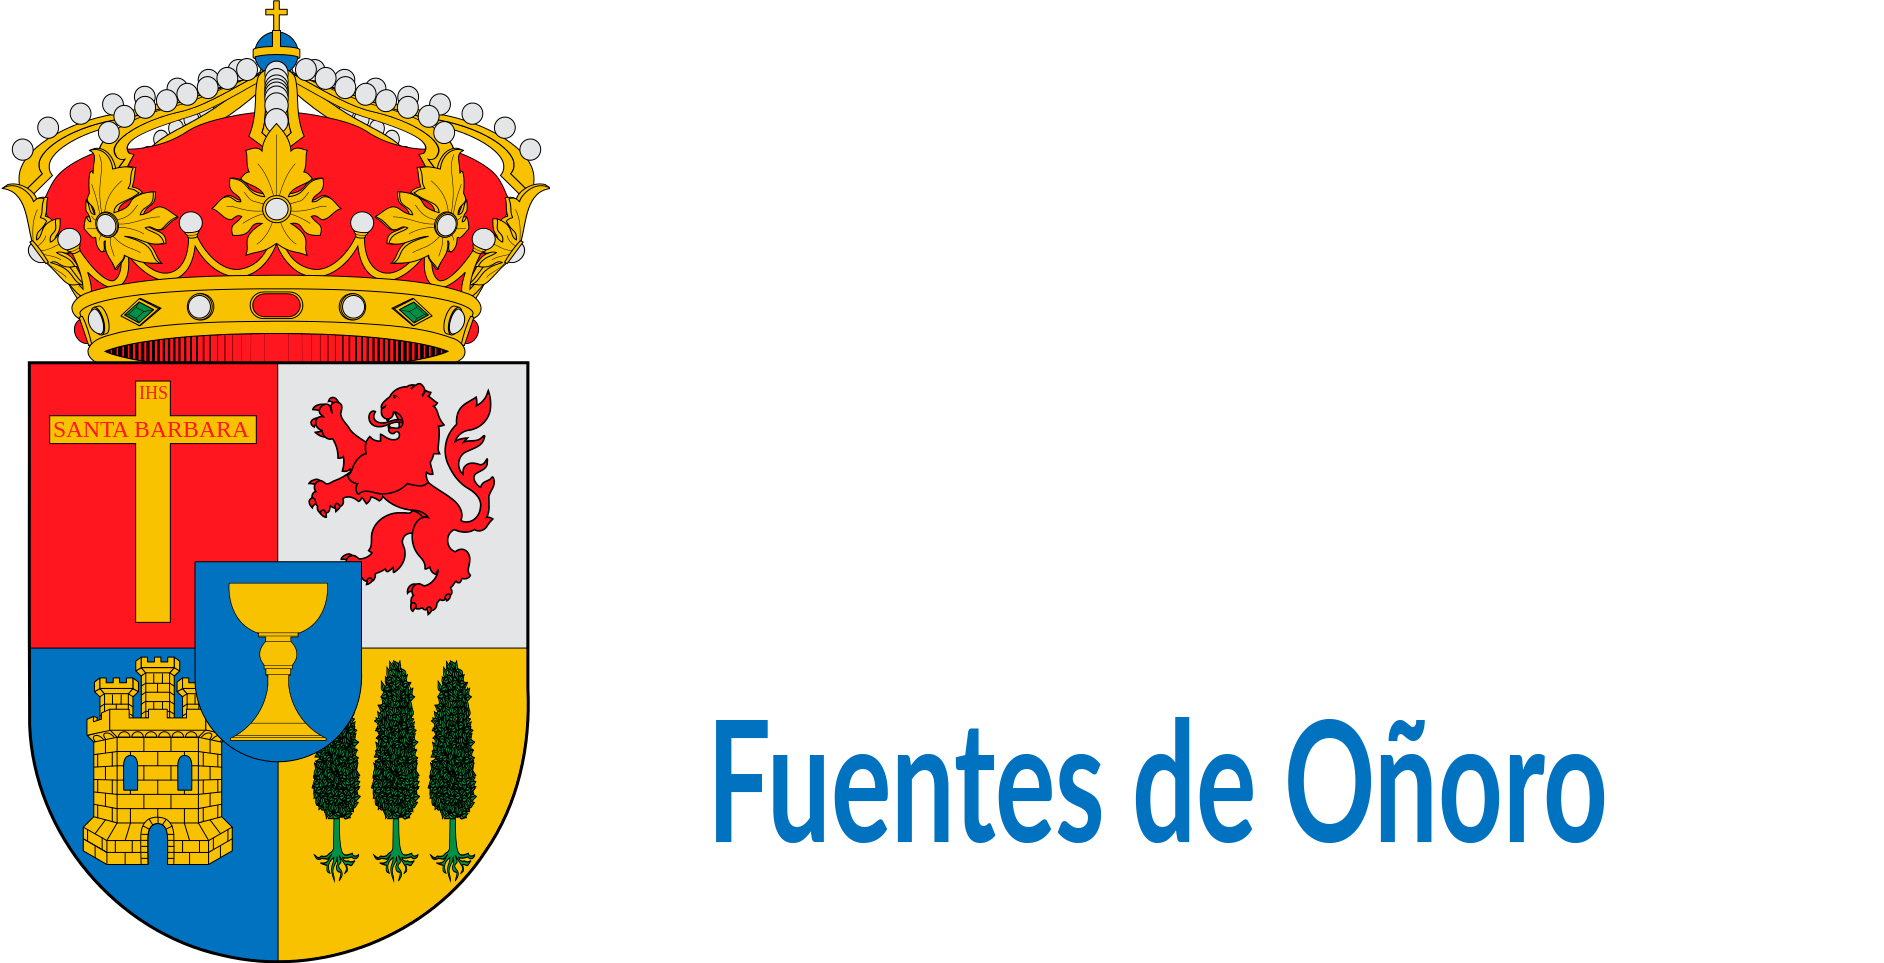 Excmo. Ayuntamiento de la Villa de Fuentes de Oñoro